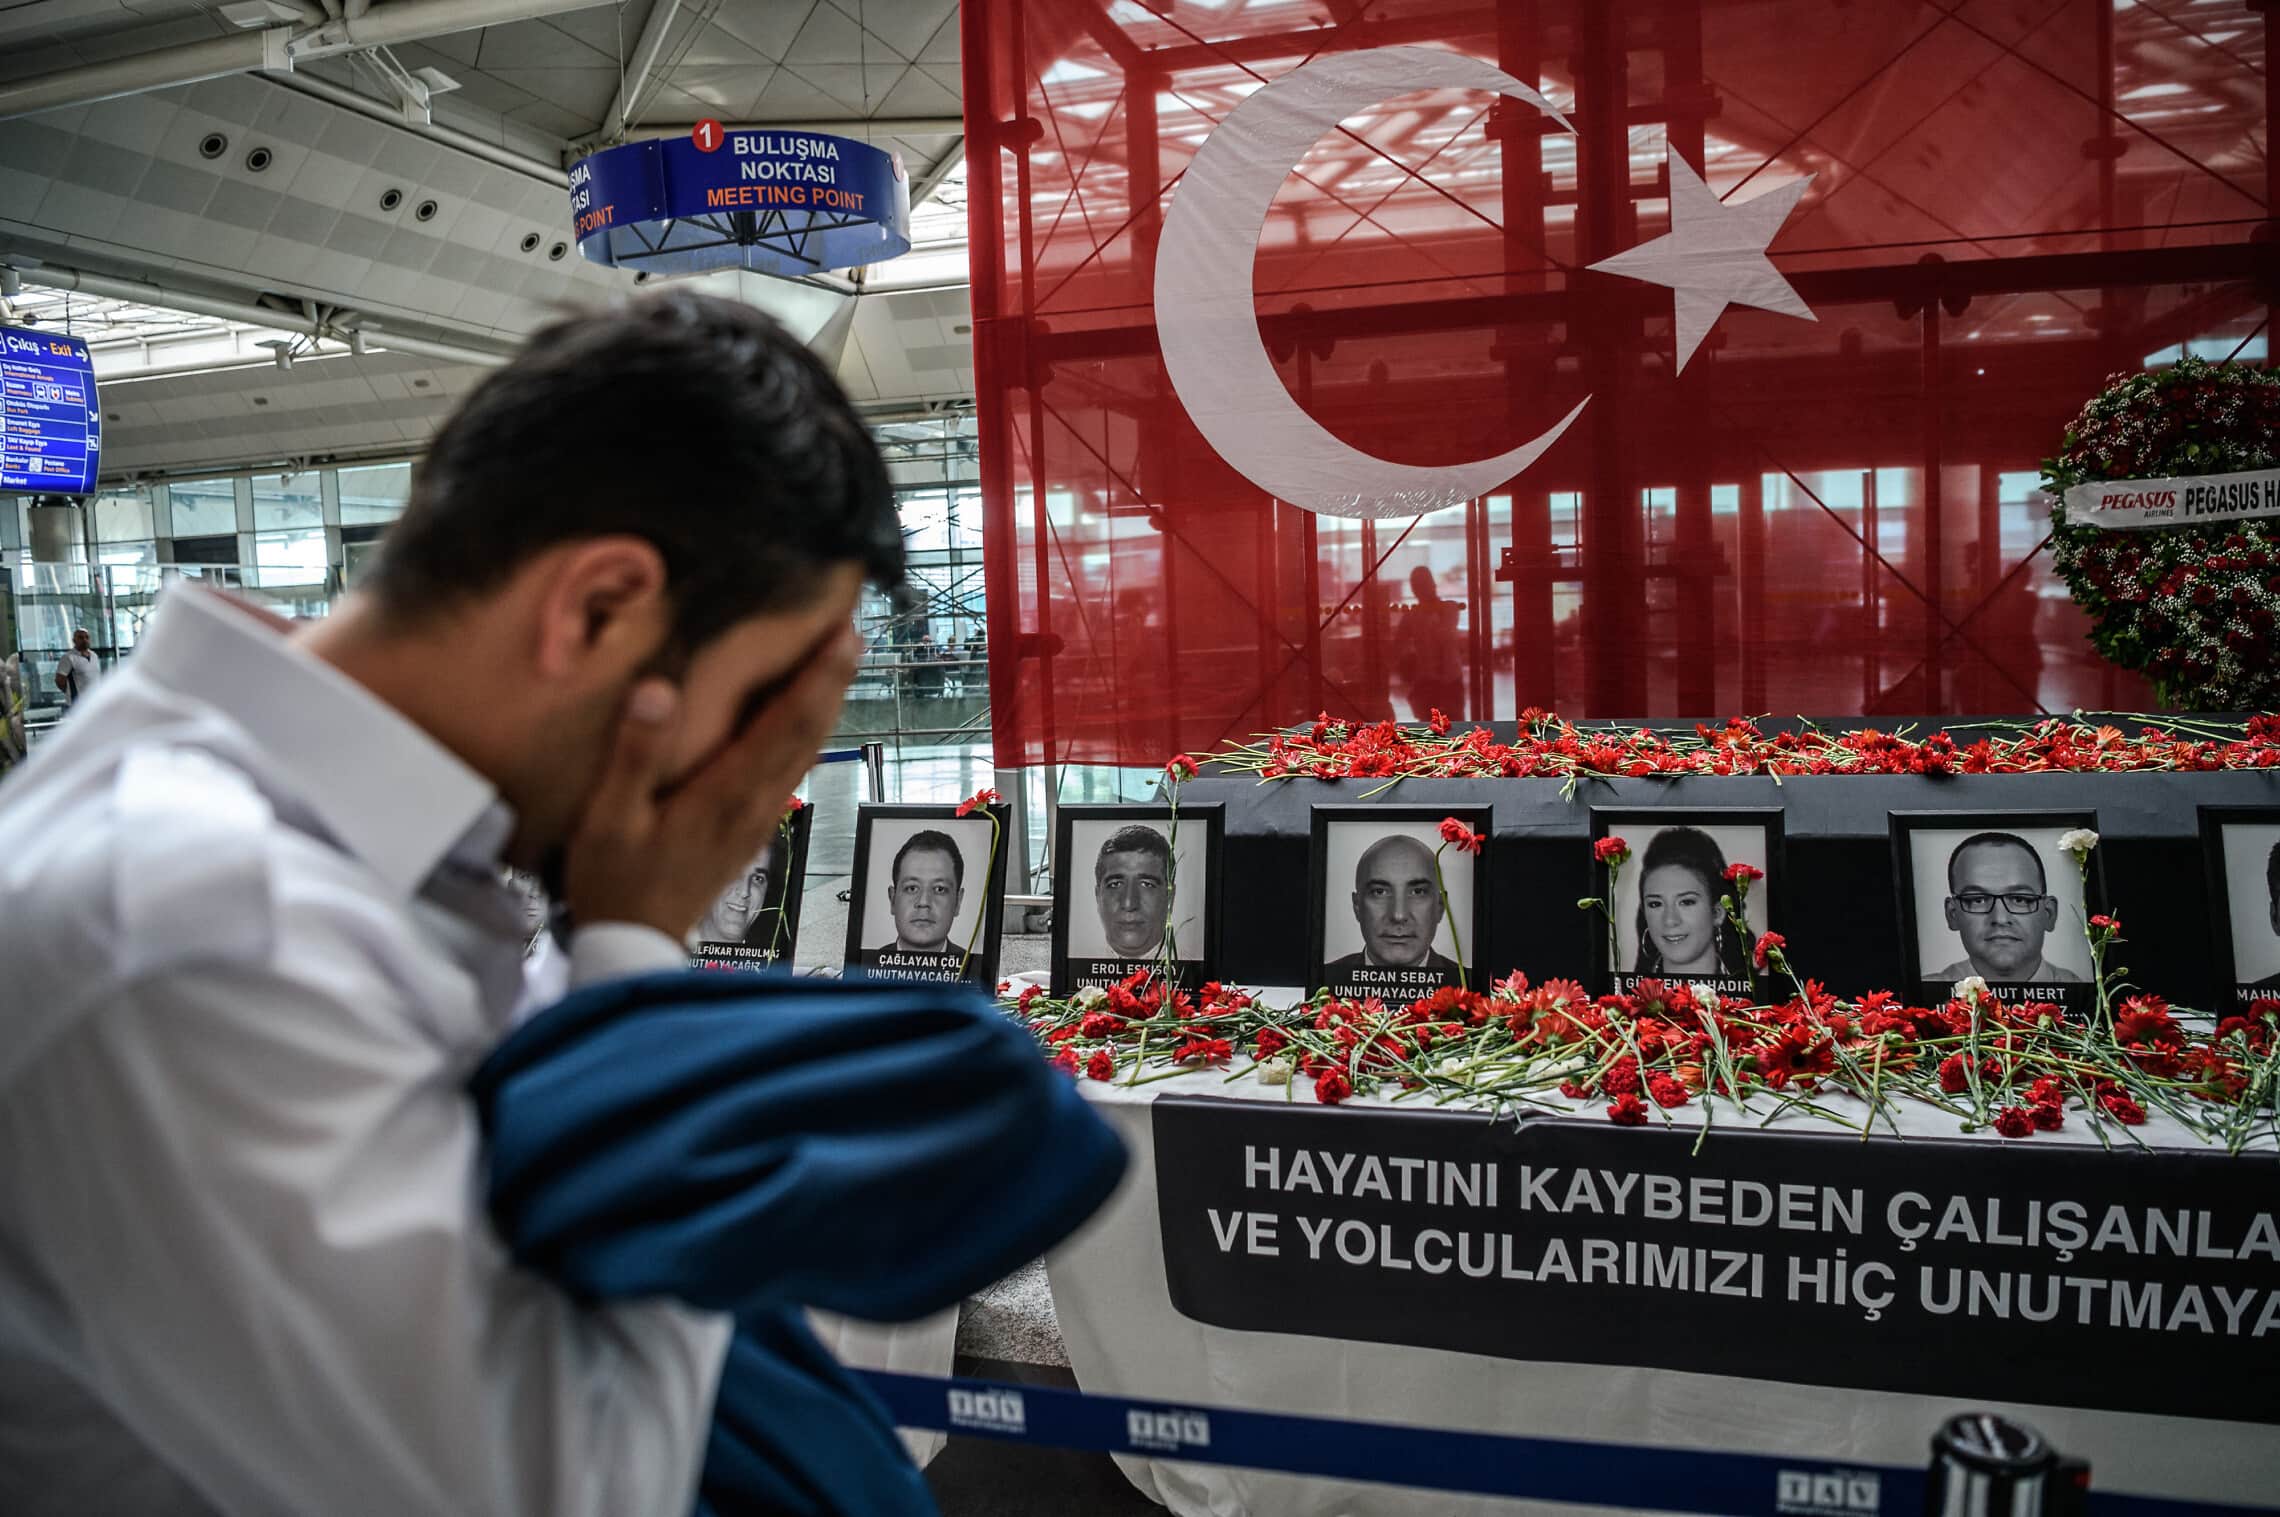 עובד בשדה התעופה הבילאומי אטאטורק באיסטנבול מתאבל על עמיתיו, 30 ביוני 2016 (צילום: OZAN KOSE / AFP)